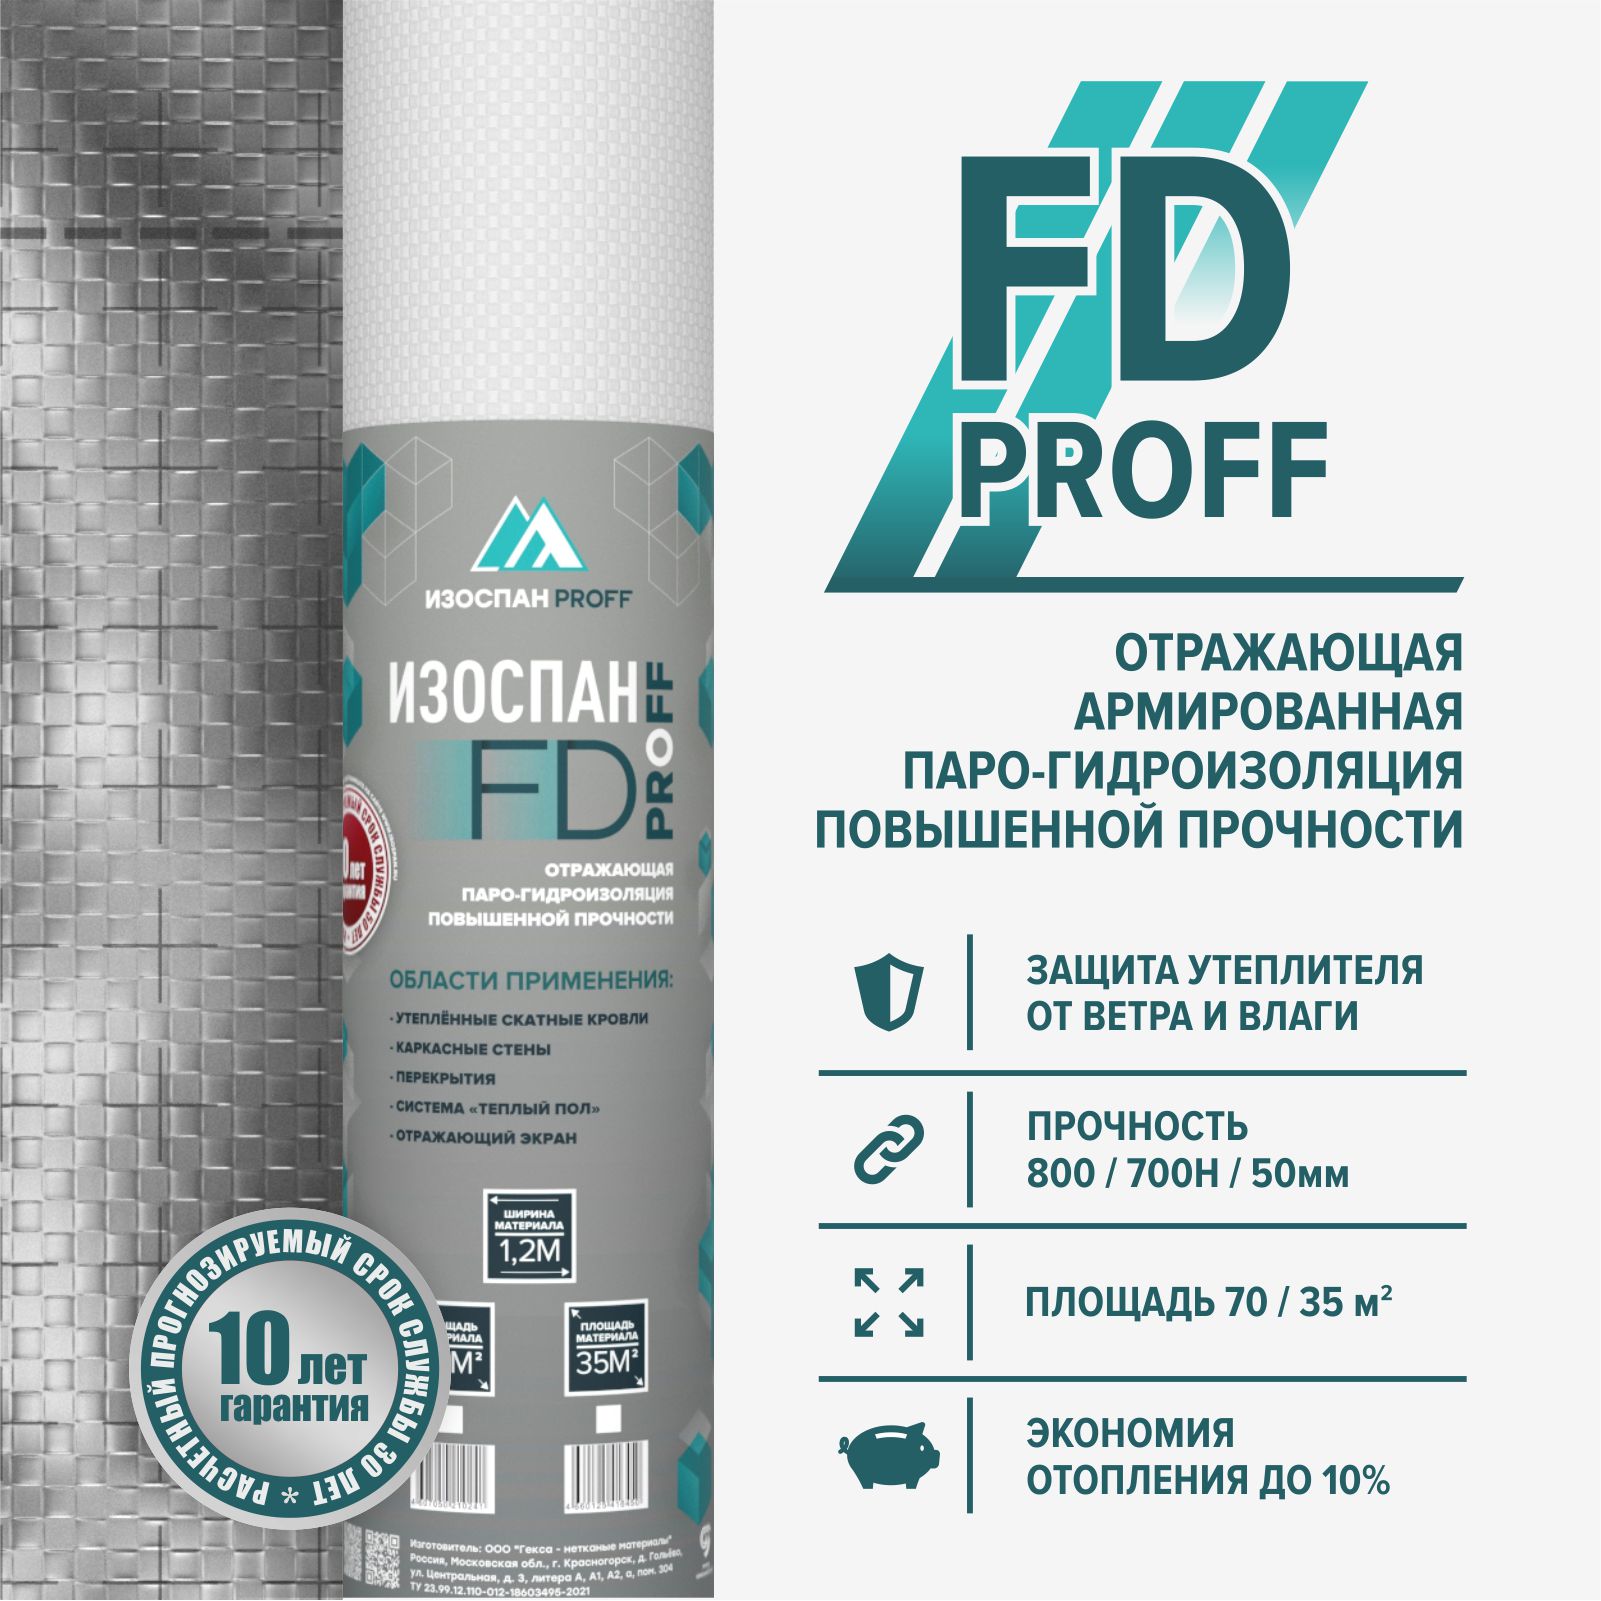 Изоспан FD proff (отражающая гидро-пароизоляция) 35м2